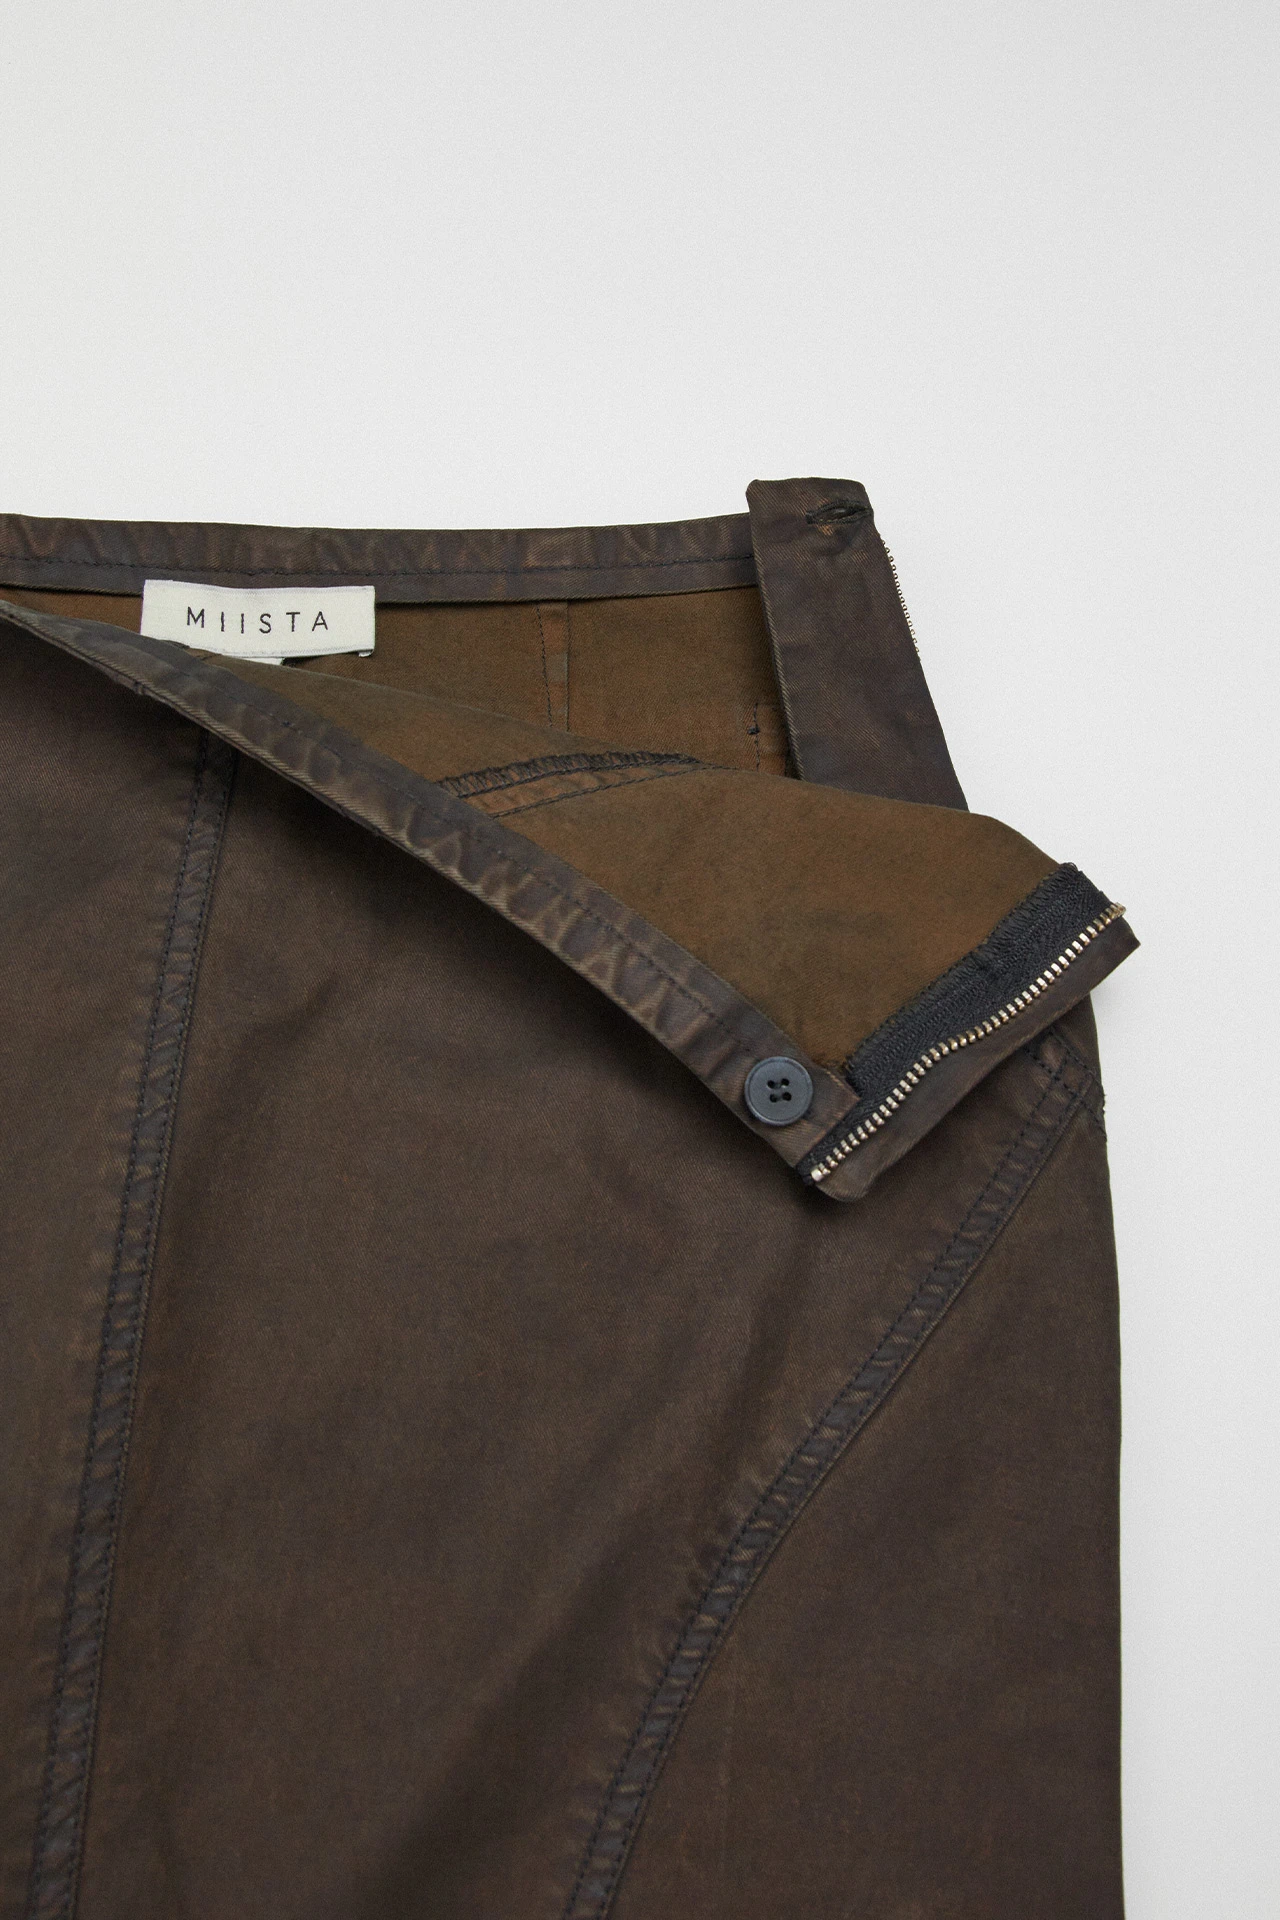 Miista-luz-brown-skirt-02